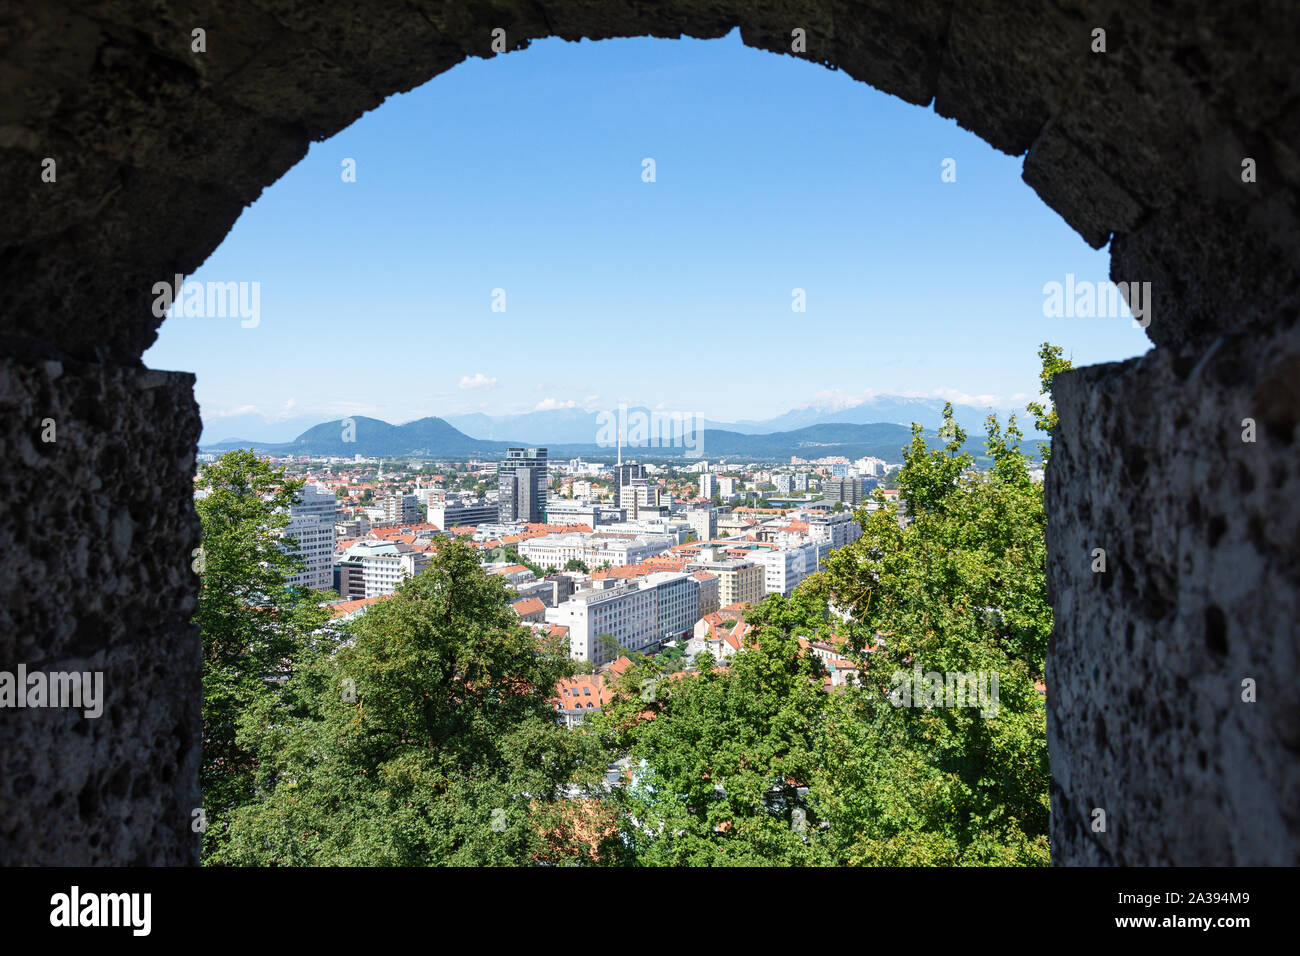 City view from inside Ljubljana Castle, Old Town, Ljubljana, Slovenia Stock Photo